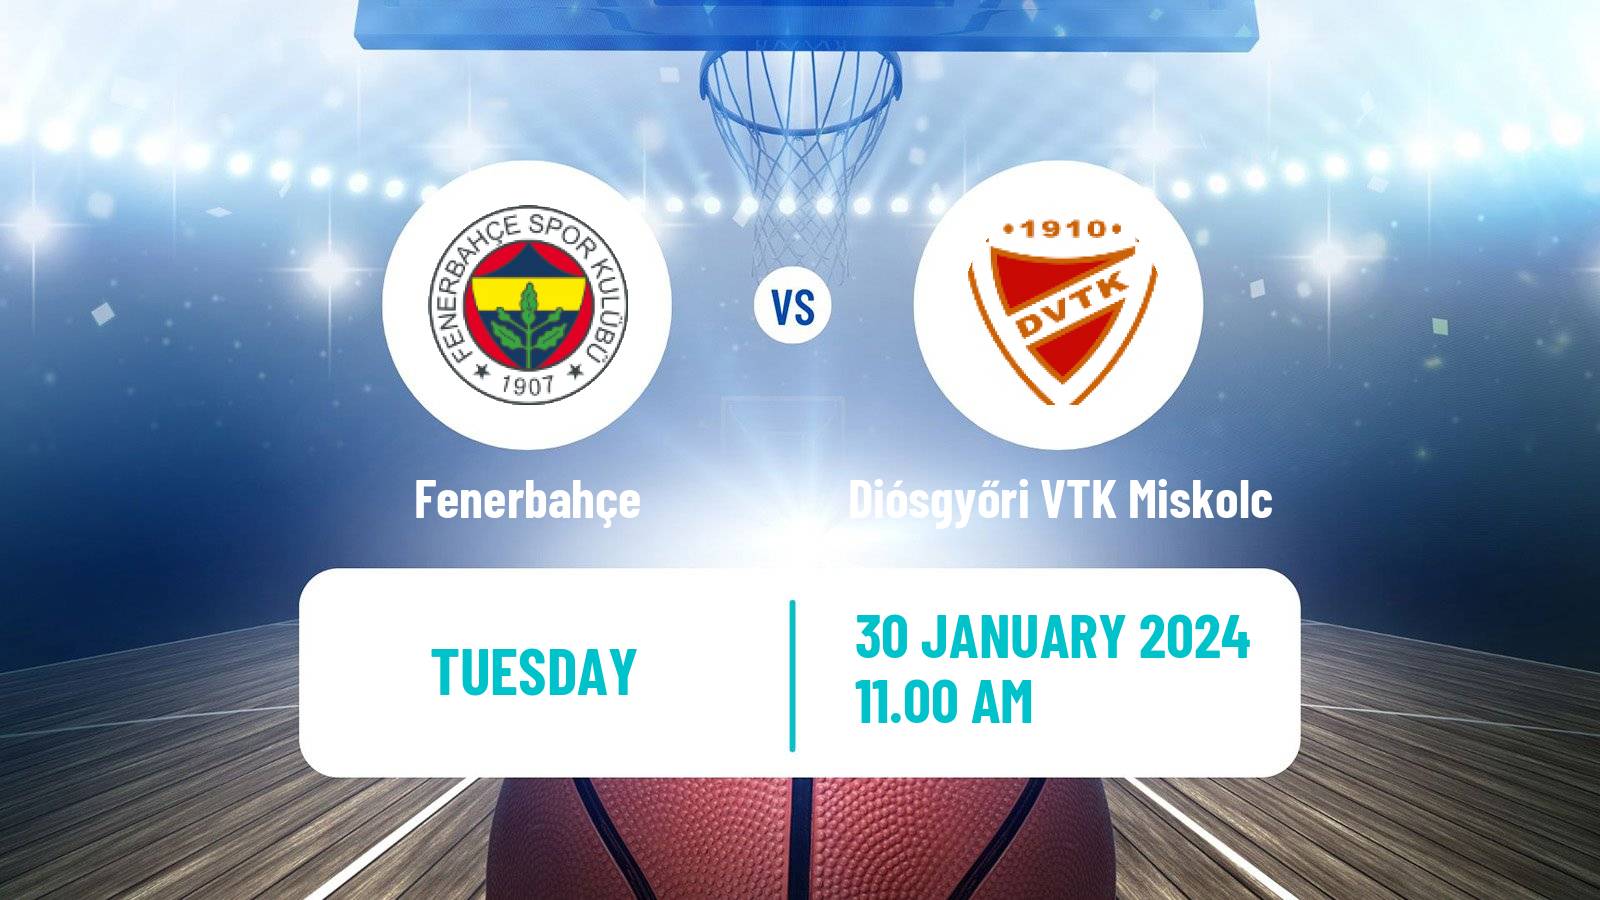 Basketball Euroleague Women Fenerbahçe - Diósgyőri VTK Miskolc